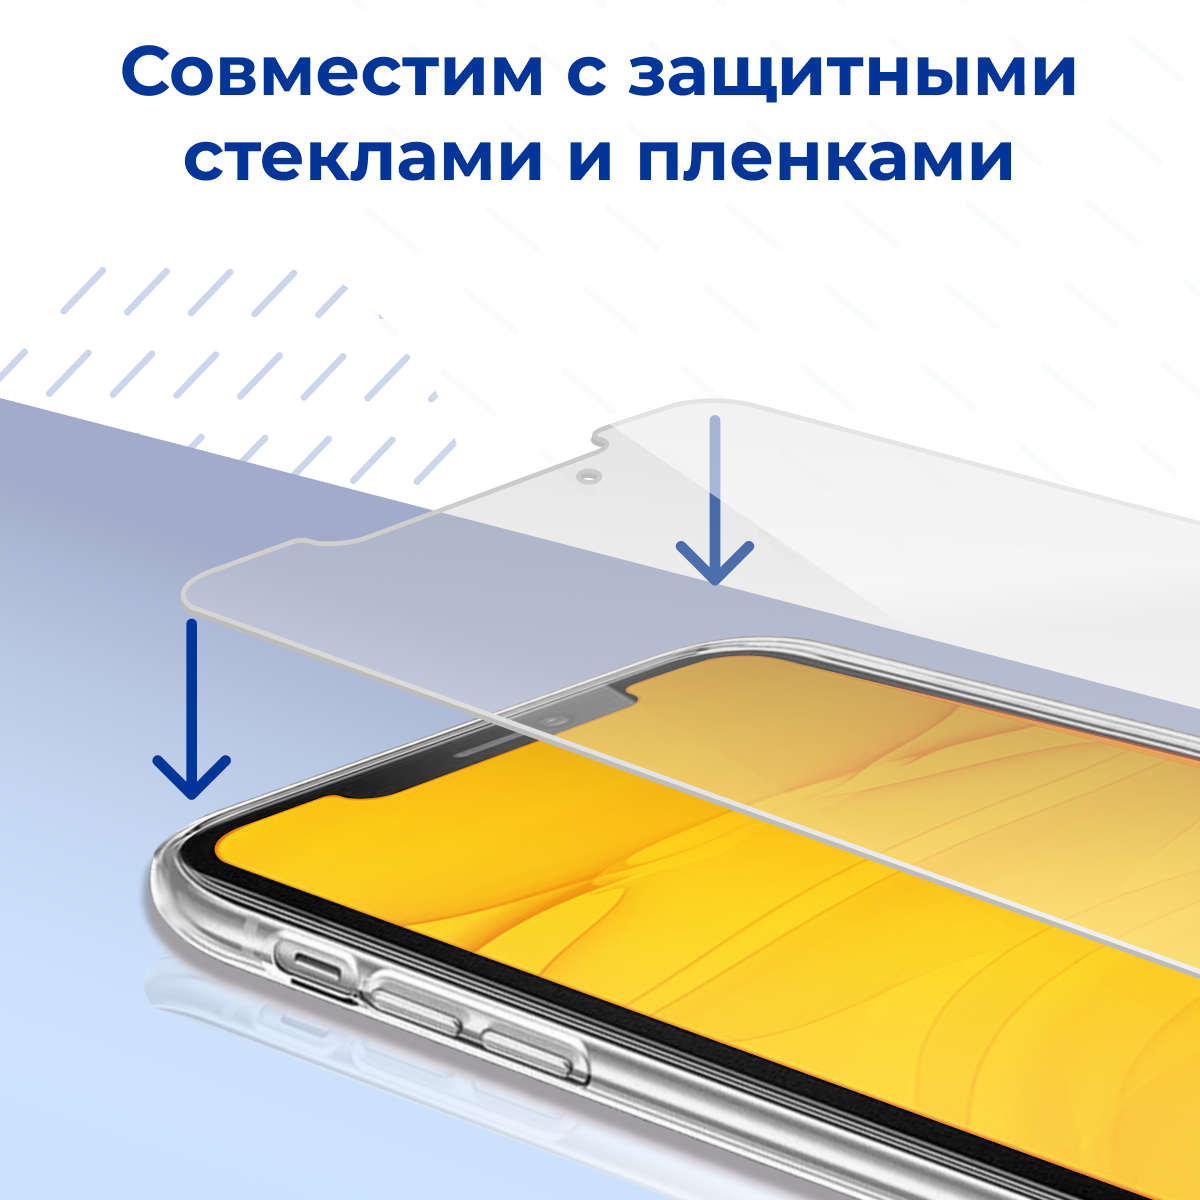 Тонкий силиконовый чехол для Apple iPhone 5, 5S и SE / Защитный прозрачный чехол на смартфон Эпл Айфон 5, 5С и СЕ